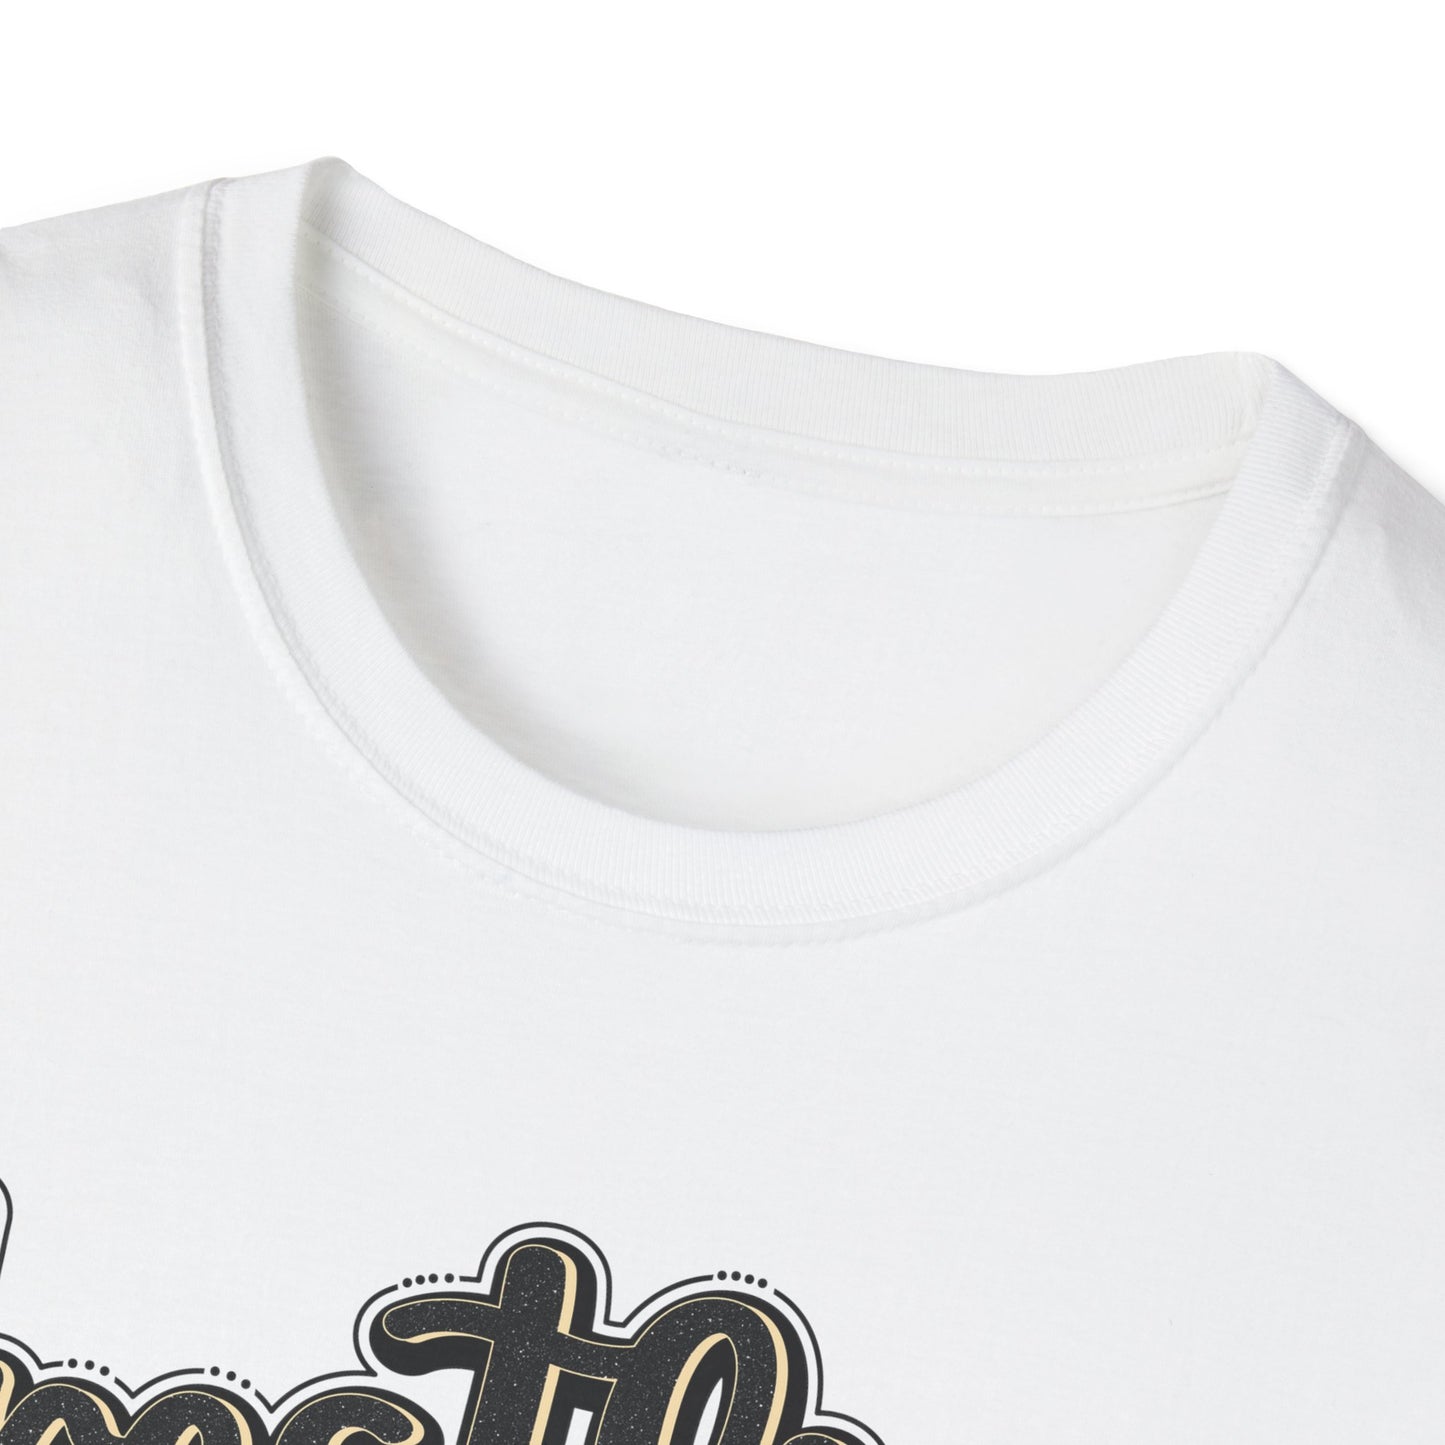 Unisex Softstyle T-Shirt - Wrestling Mom